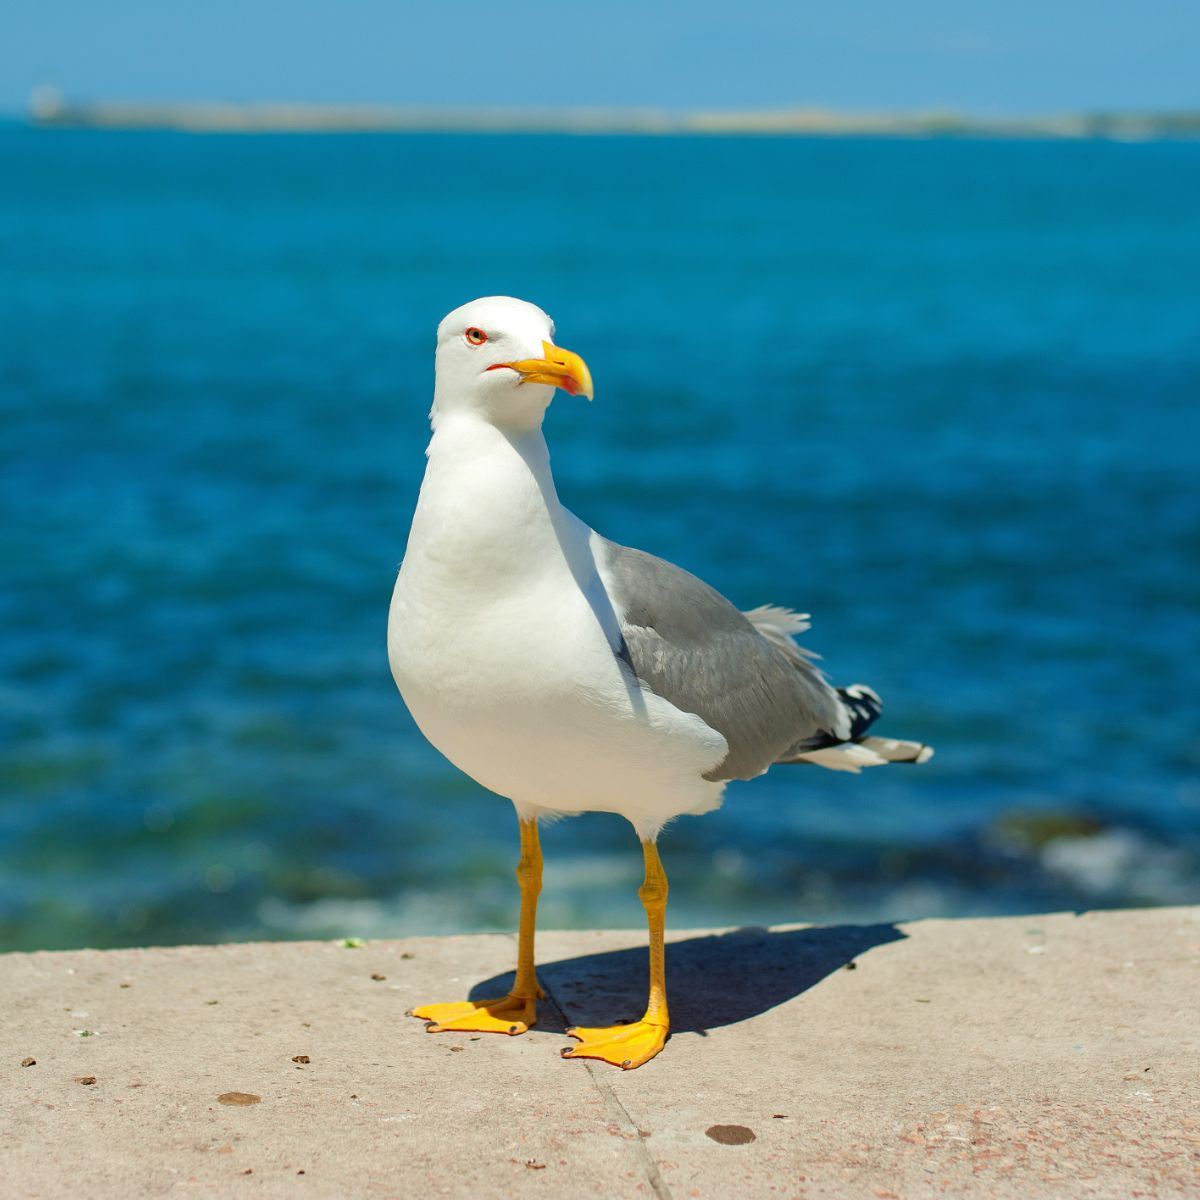 Seagull: spiritual meaning - Awakening State